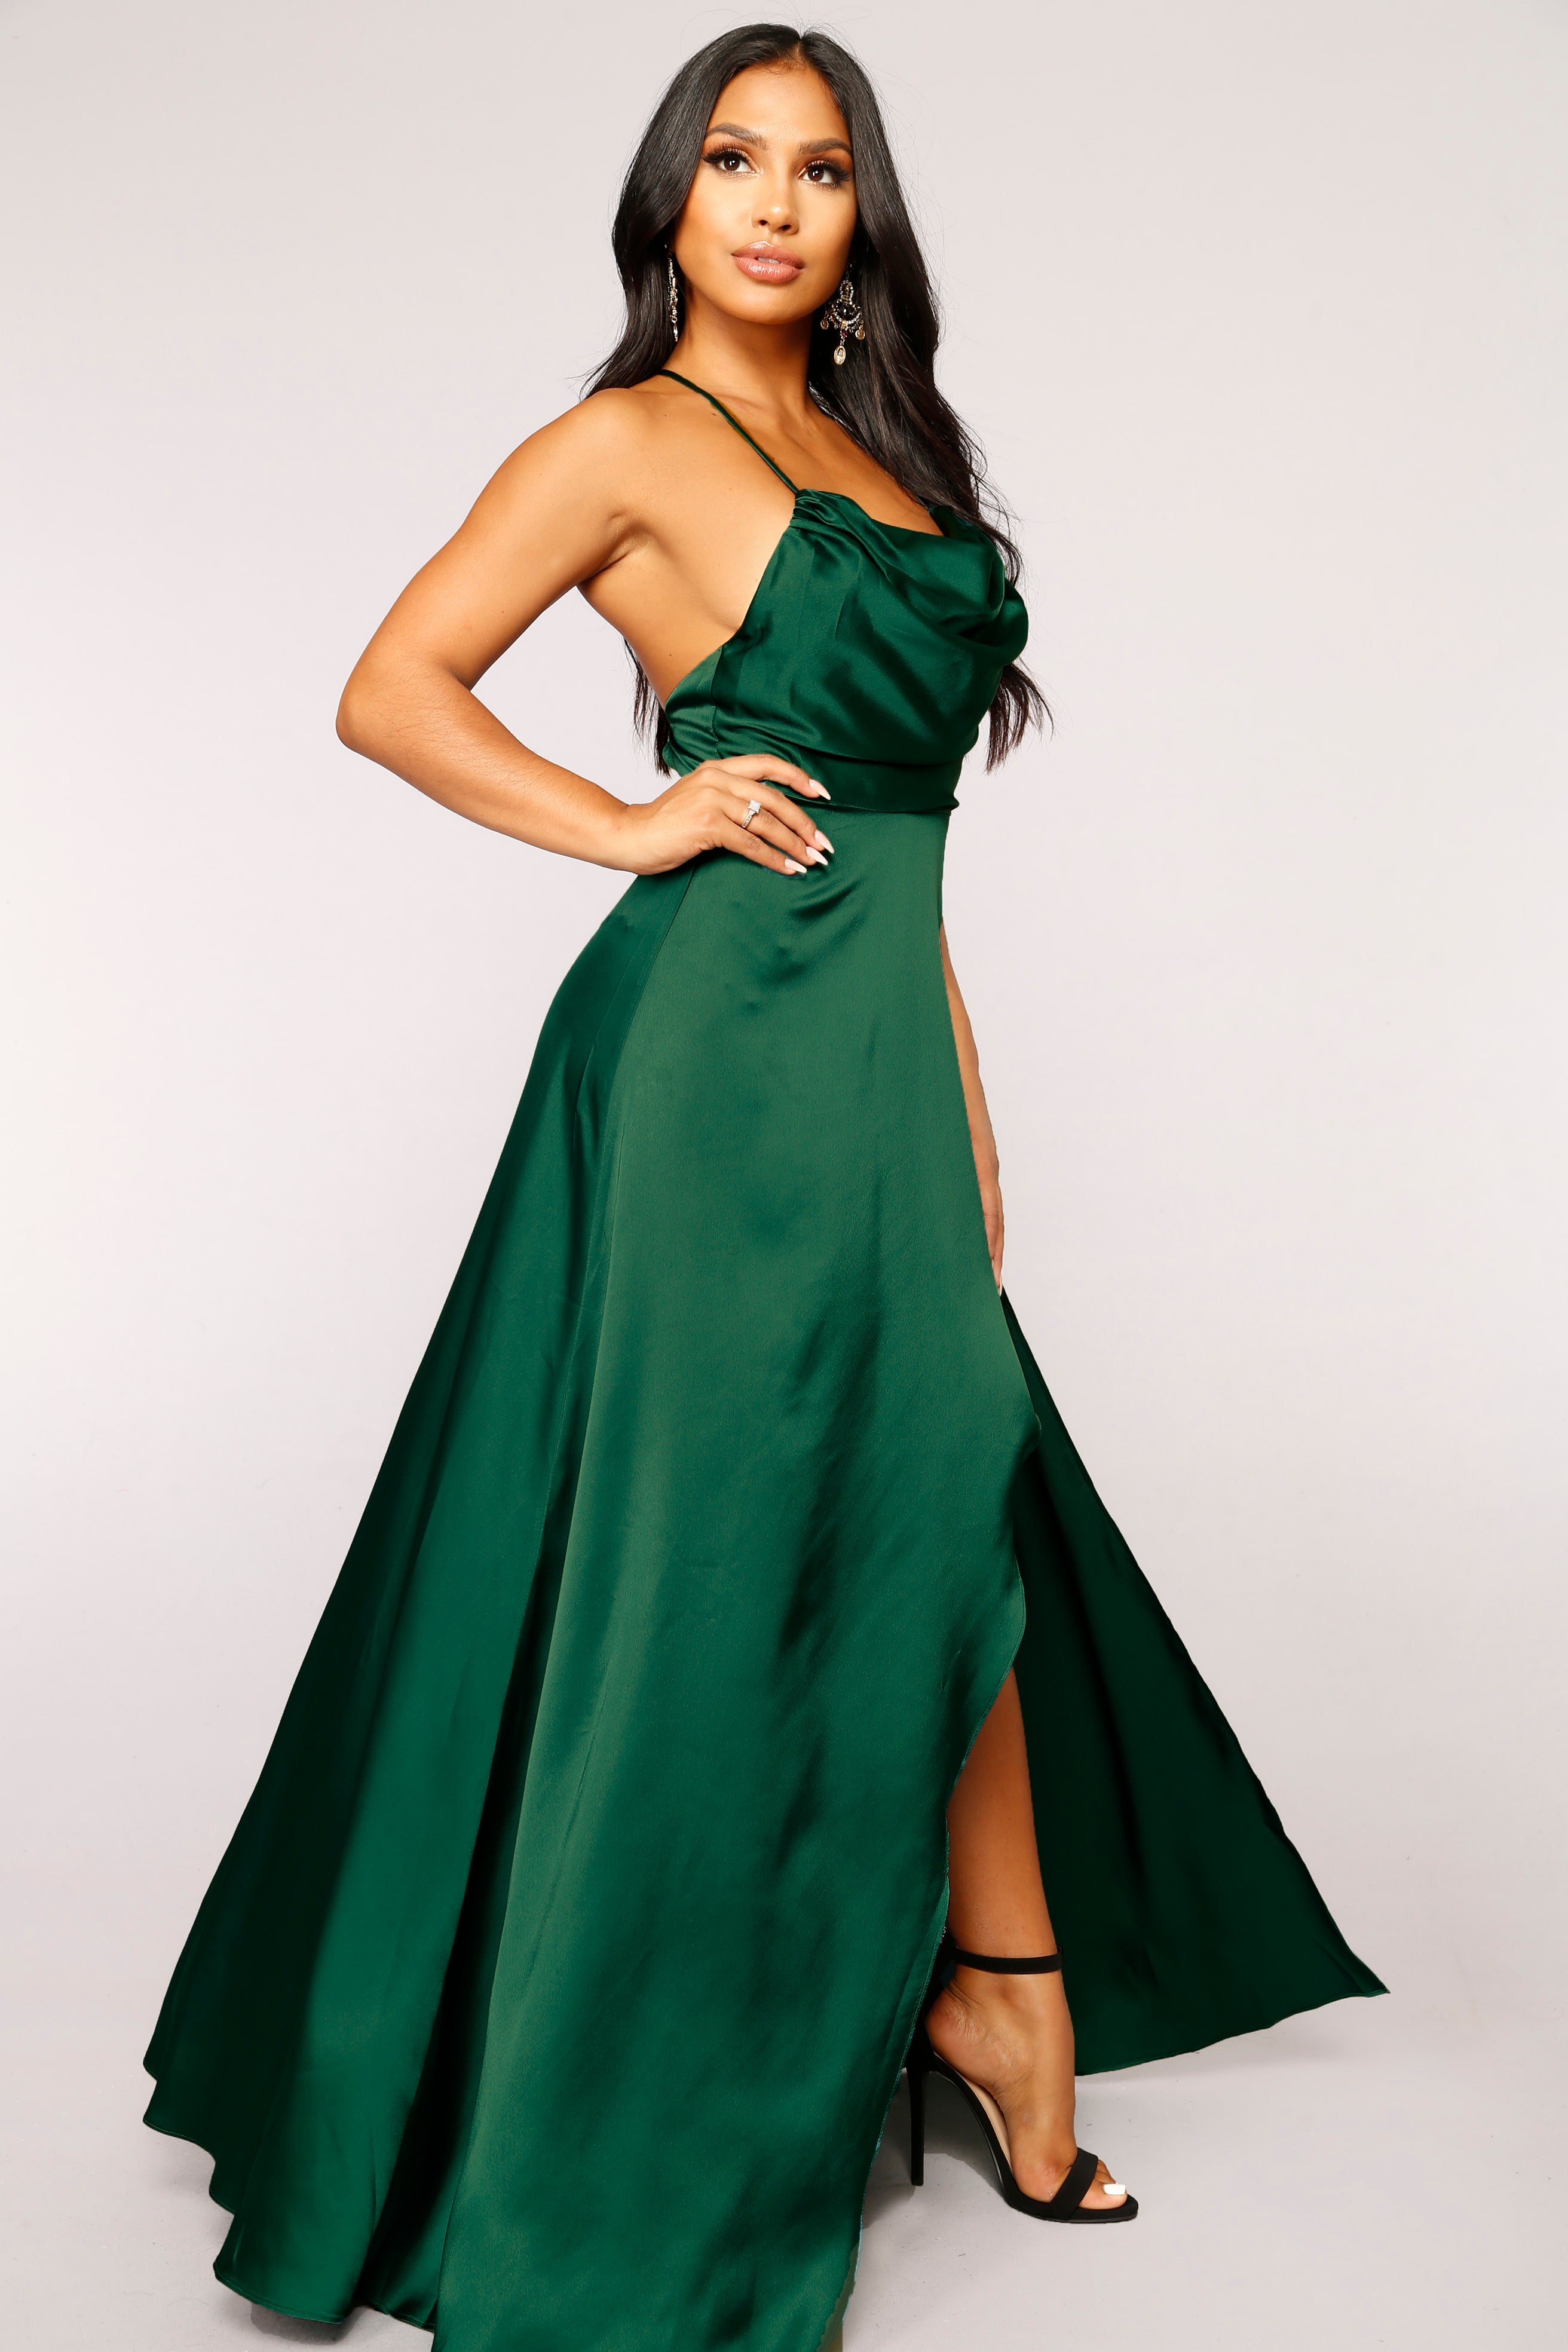 Rare Feeling Dress - Green – Fashion Nova